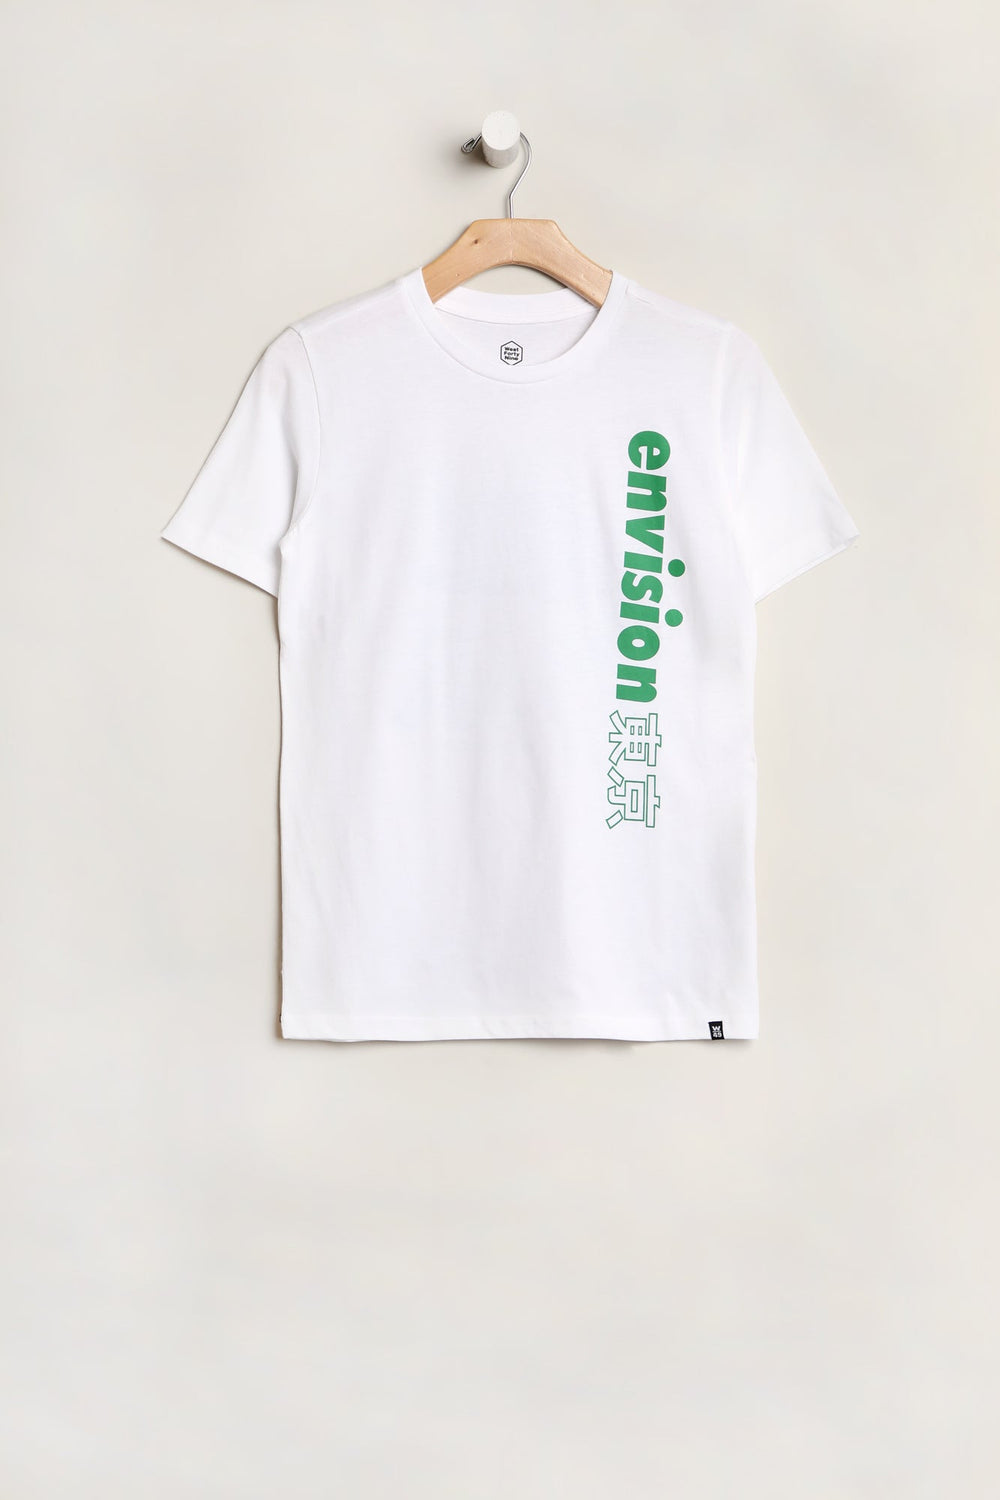 T-Shirt Imprimé Envision West49 Junior Blanc